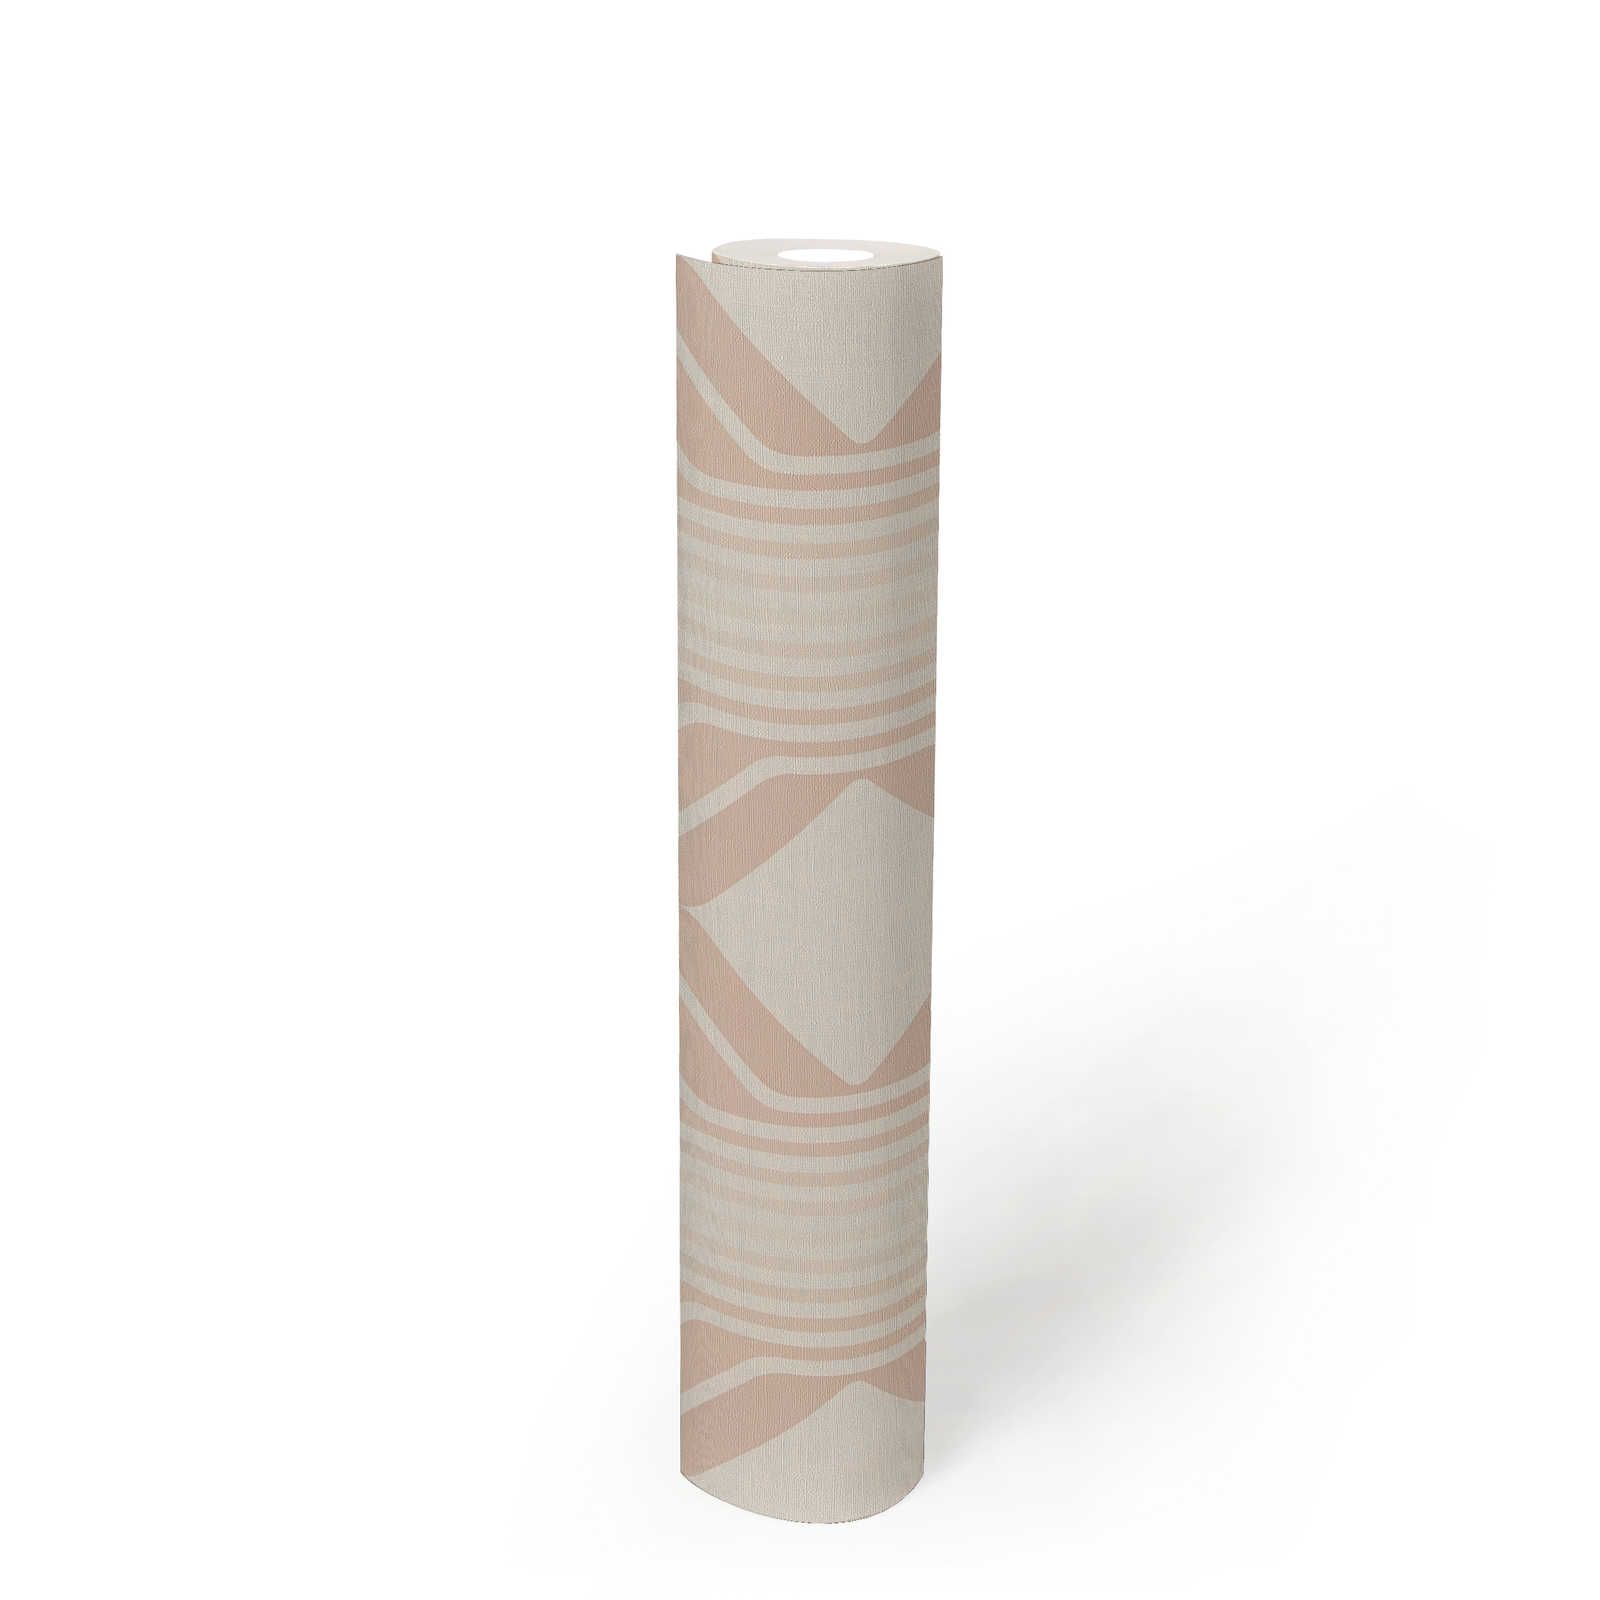             Retro Tapete mit Rauten Bemusterung in sanften Farben – Beige, Creme, Weiß
        